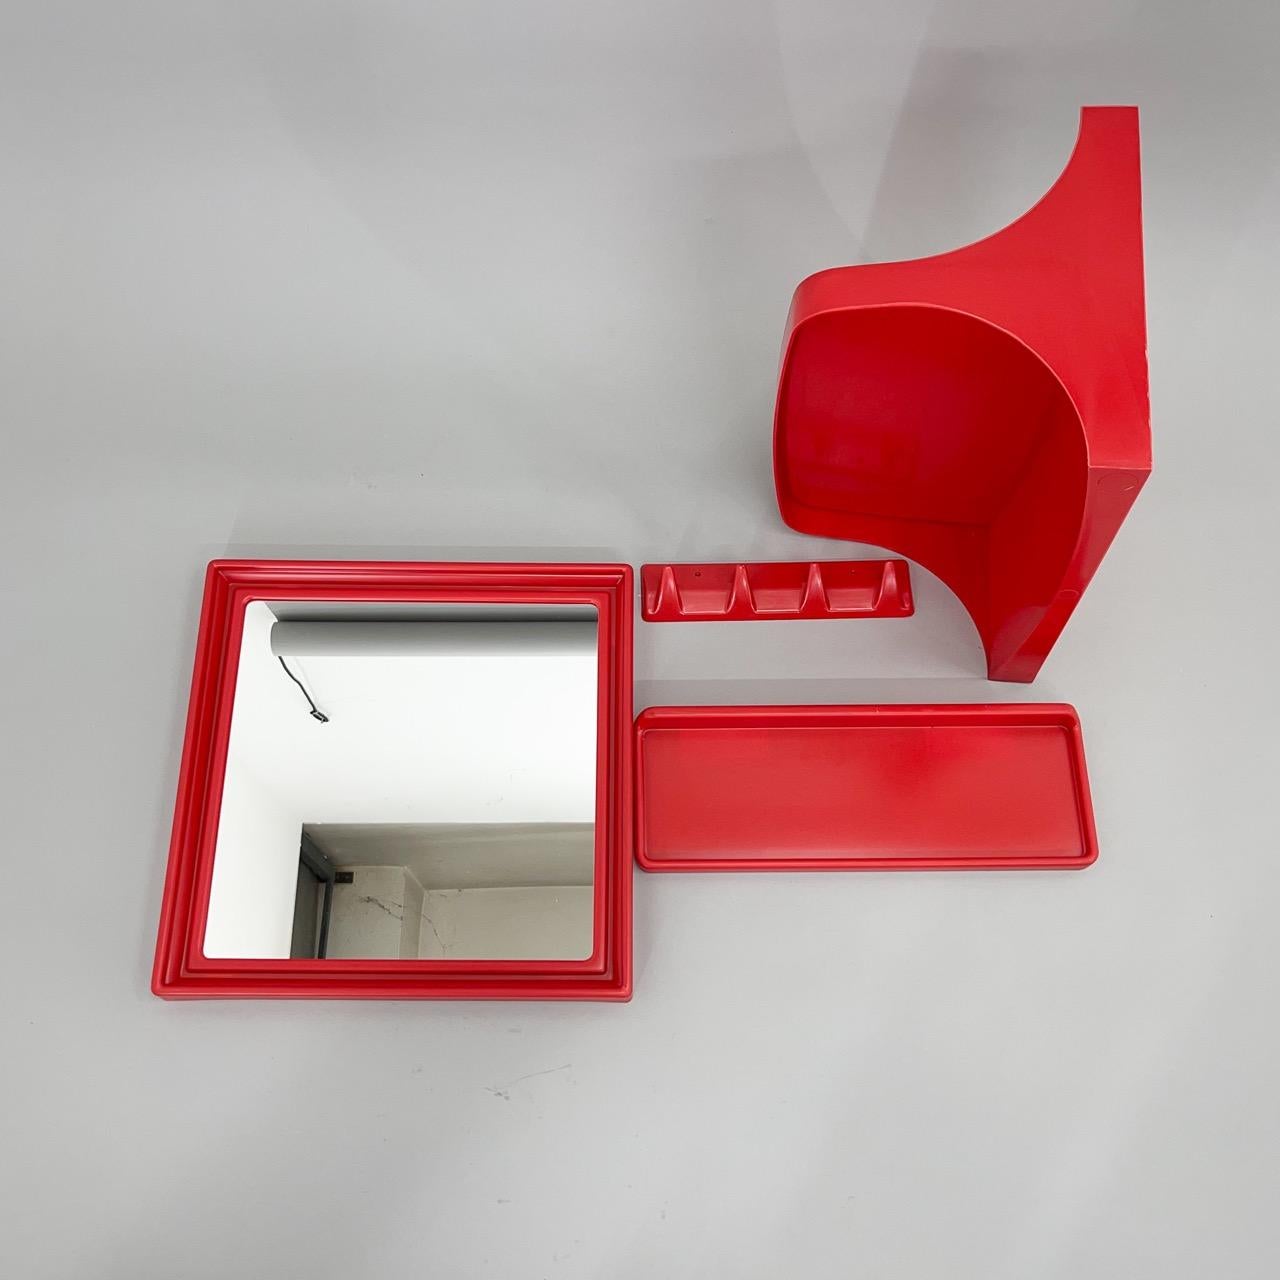 Vierteiliges Set aus Kunststoff in einer sehr schönen roten Farbe. Schöne Sammlung aus den 1970er Jahren. 
Der Spiegel ist 40 cm breit und 40 cm hoch, der Aufhänger ist 26 cm lang und 6 cm hoch, die kleinere Ablage ist 40 cm lang und 14 cm tief,